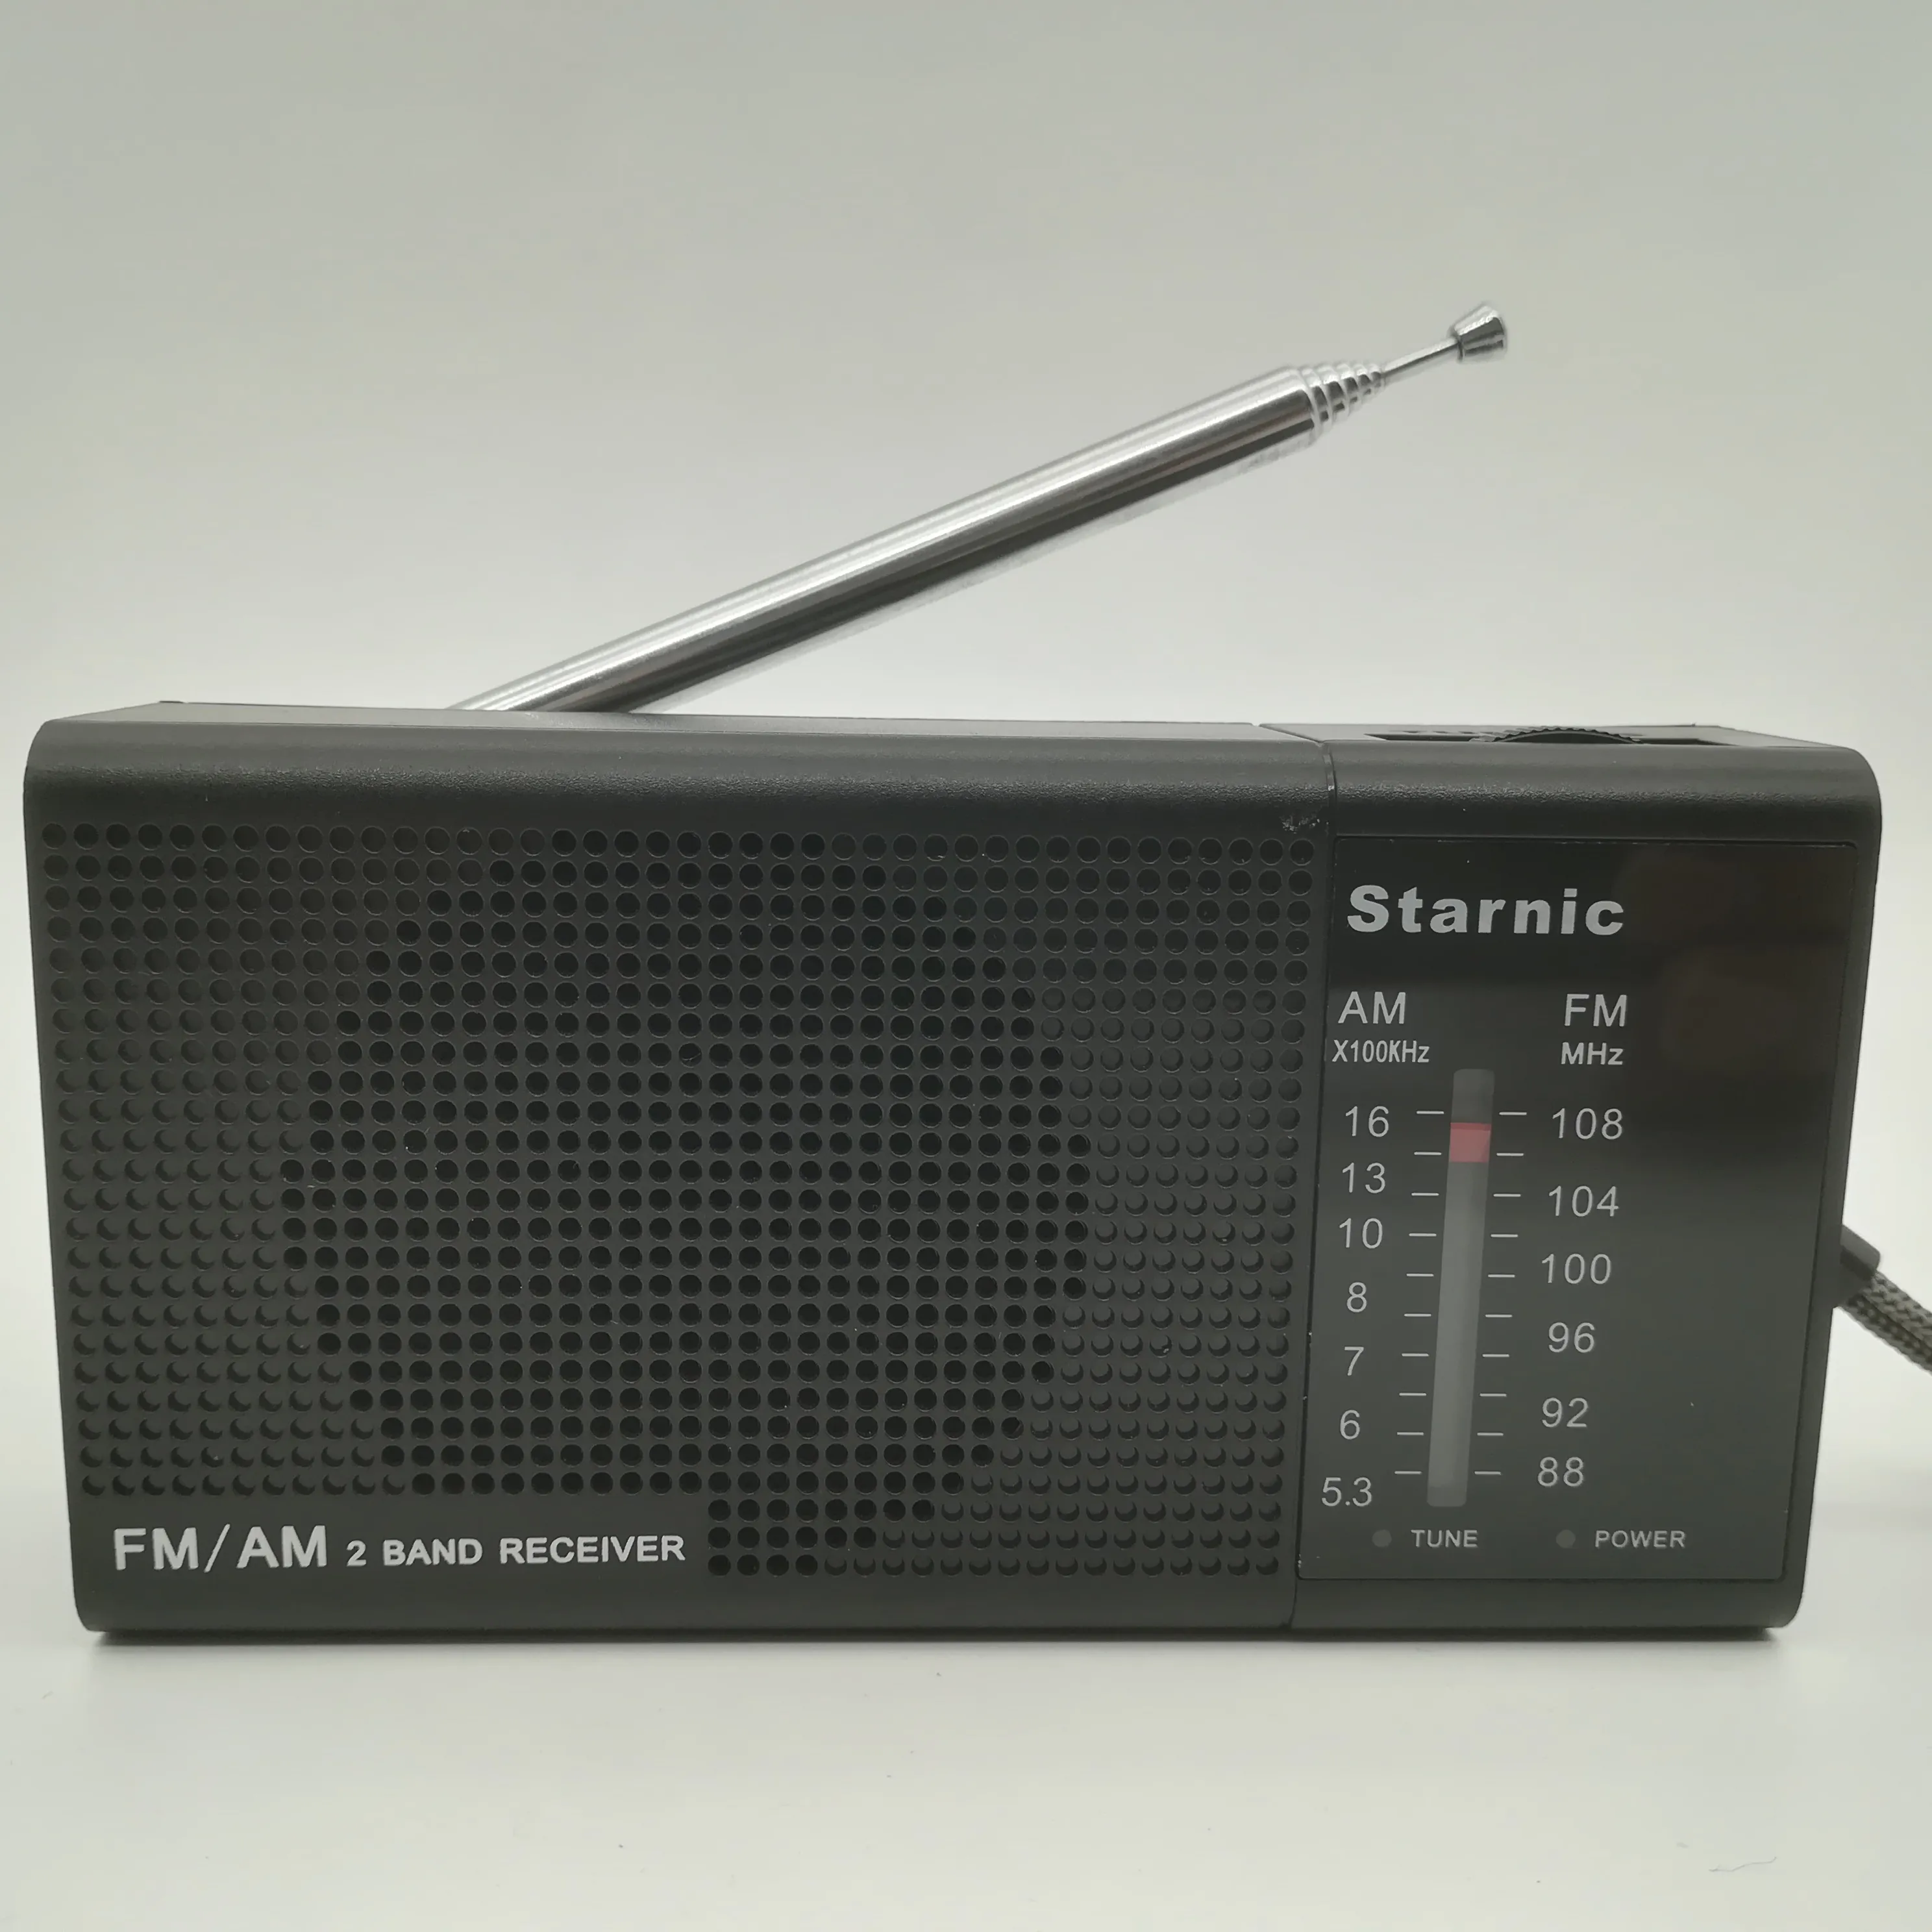 Radio analogique FM AM 2 band courte, récepteur du monde haute sensibilité, de poche, ondes courtes